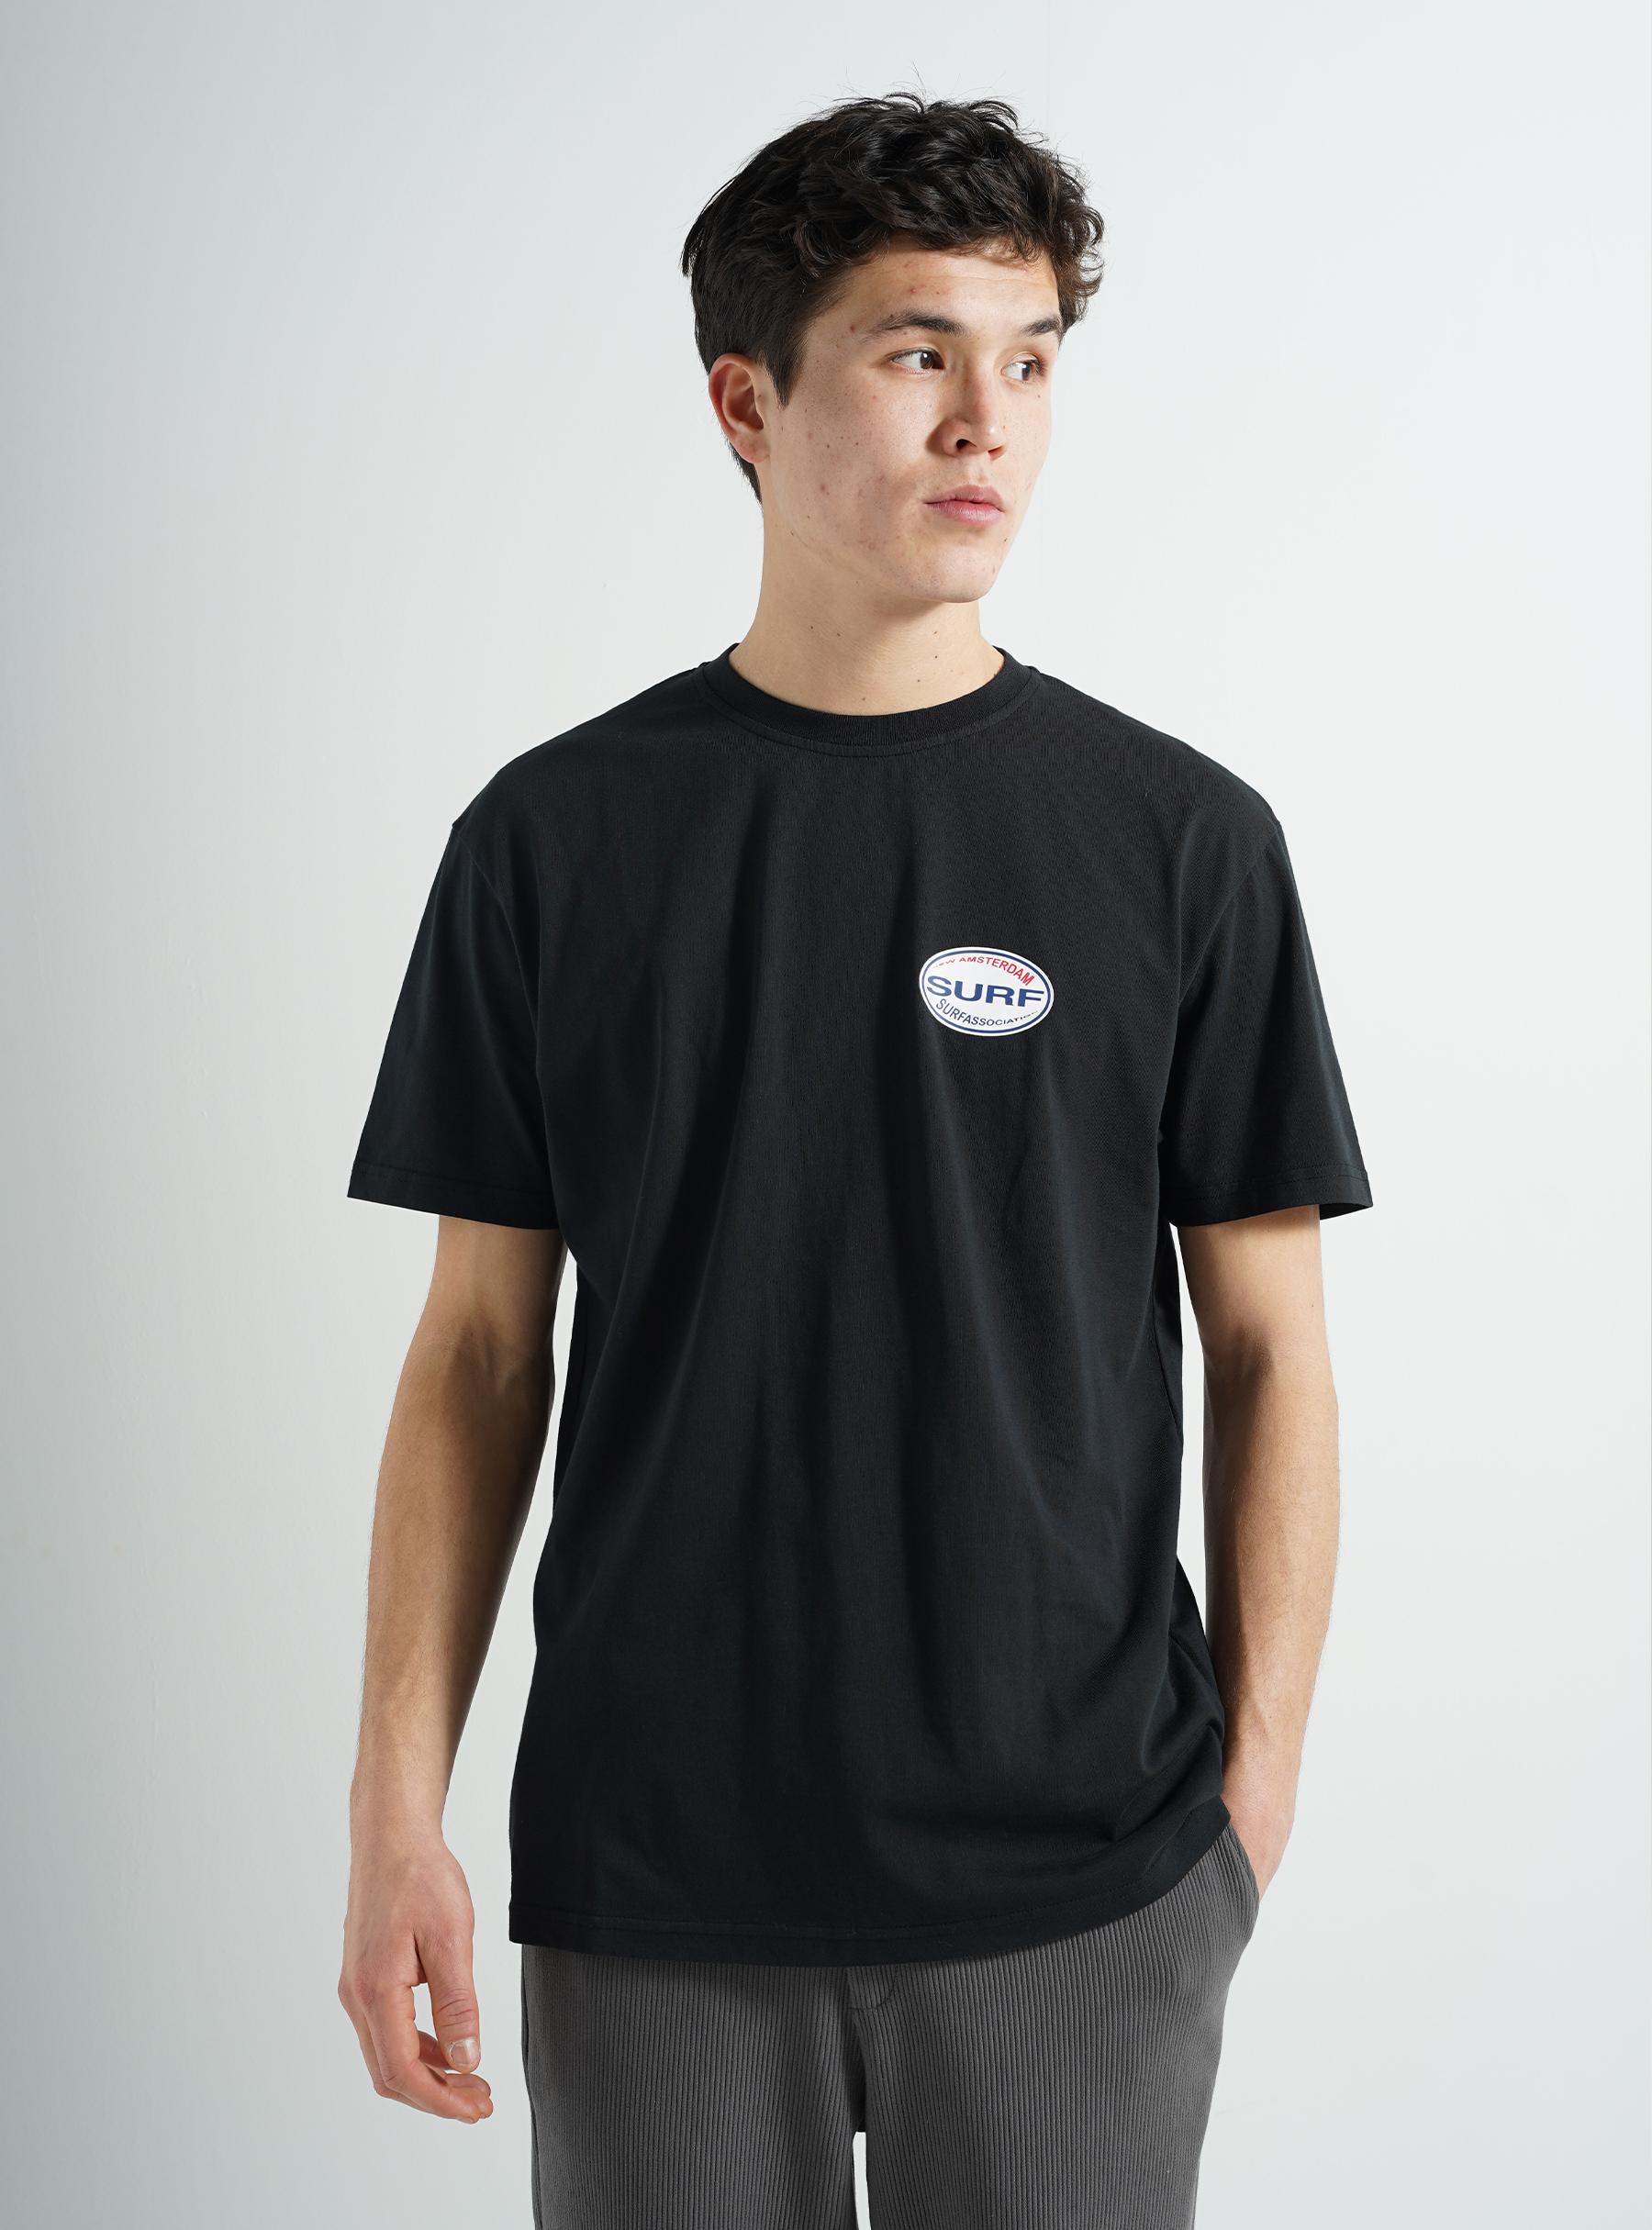 Surf T-shirt Black 2302051001